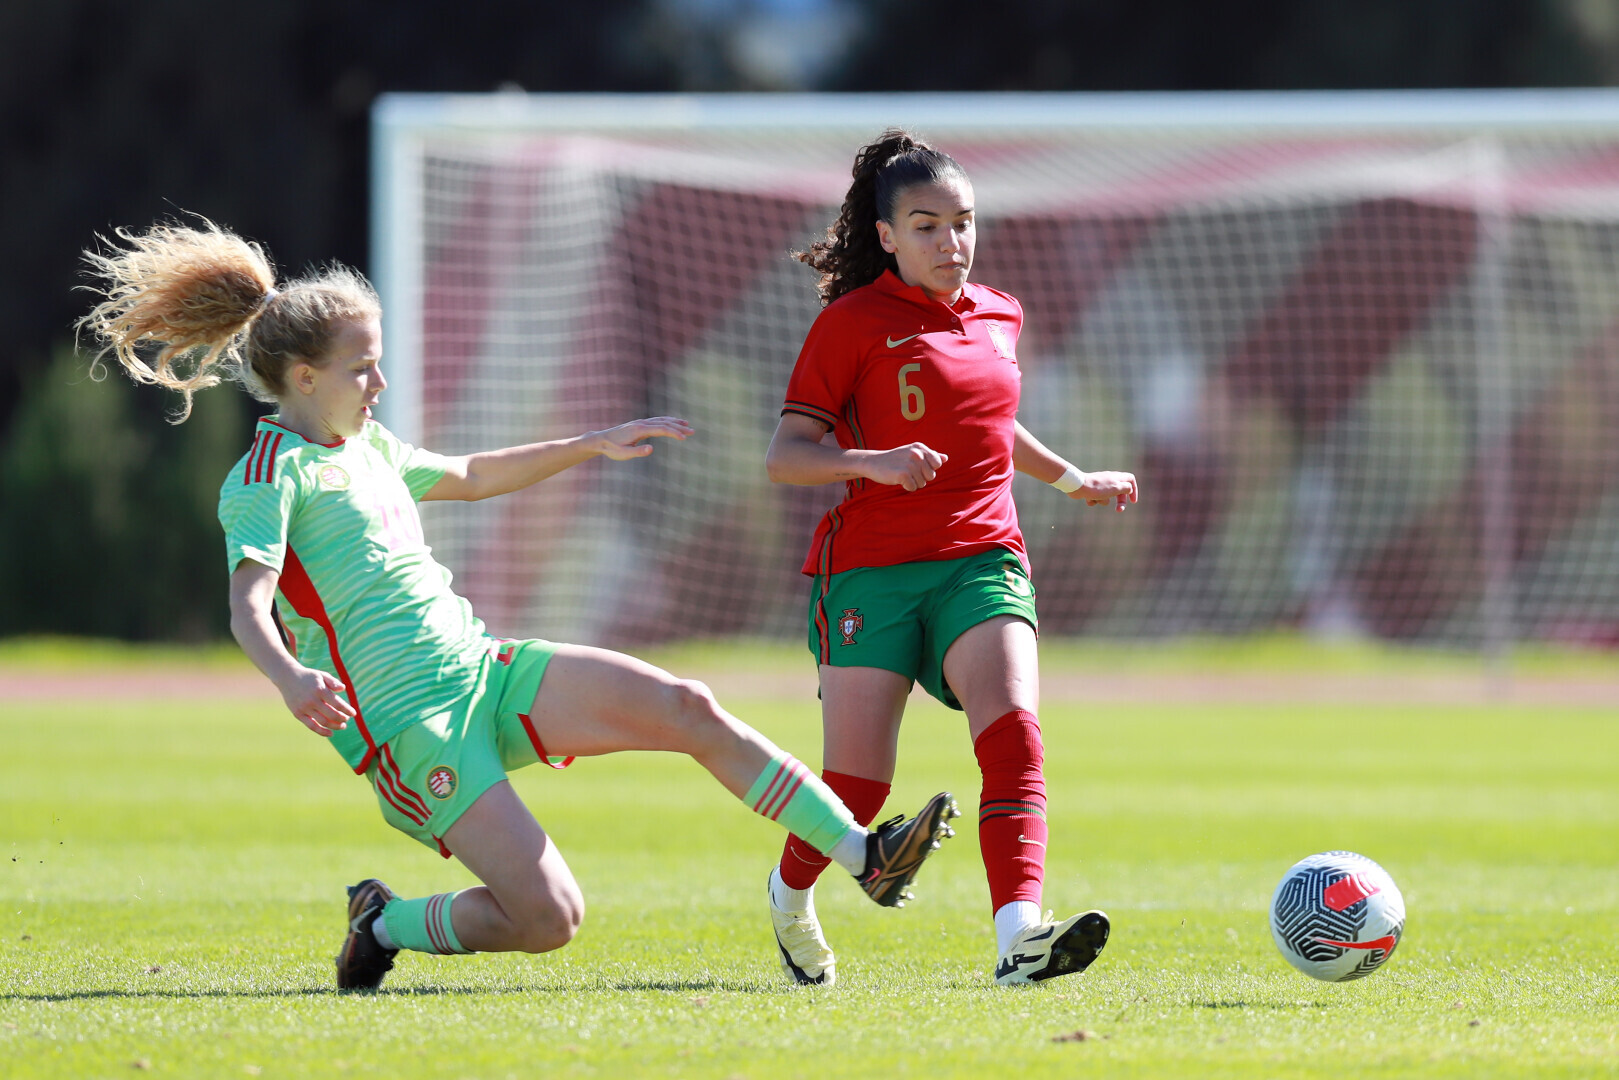 Szoros meccsen vereség - így búcsúztak női U19-eseink a felkészülési tornától